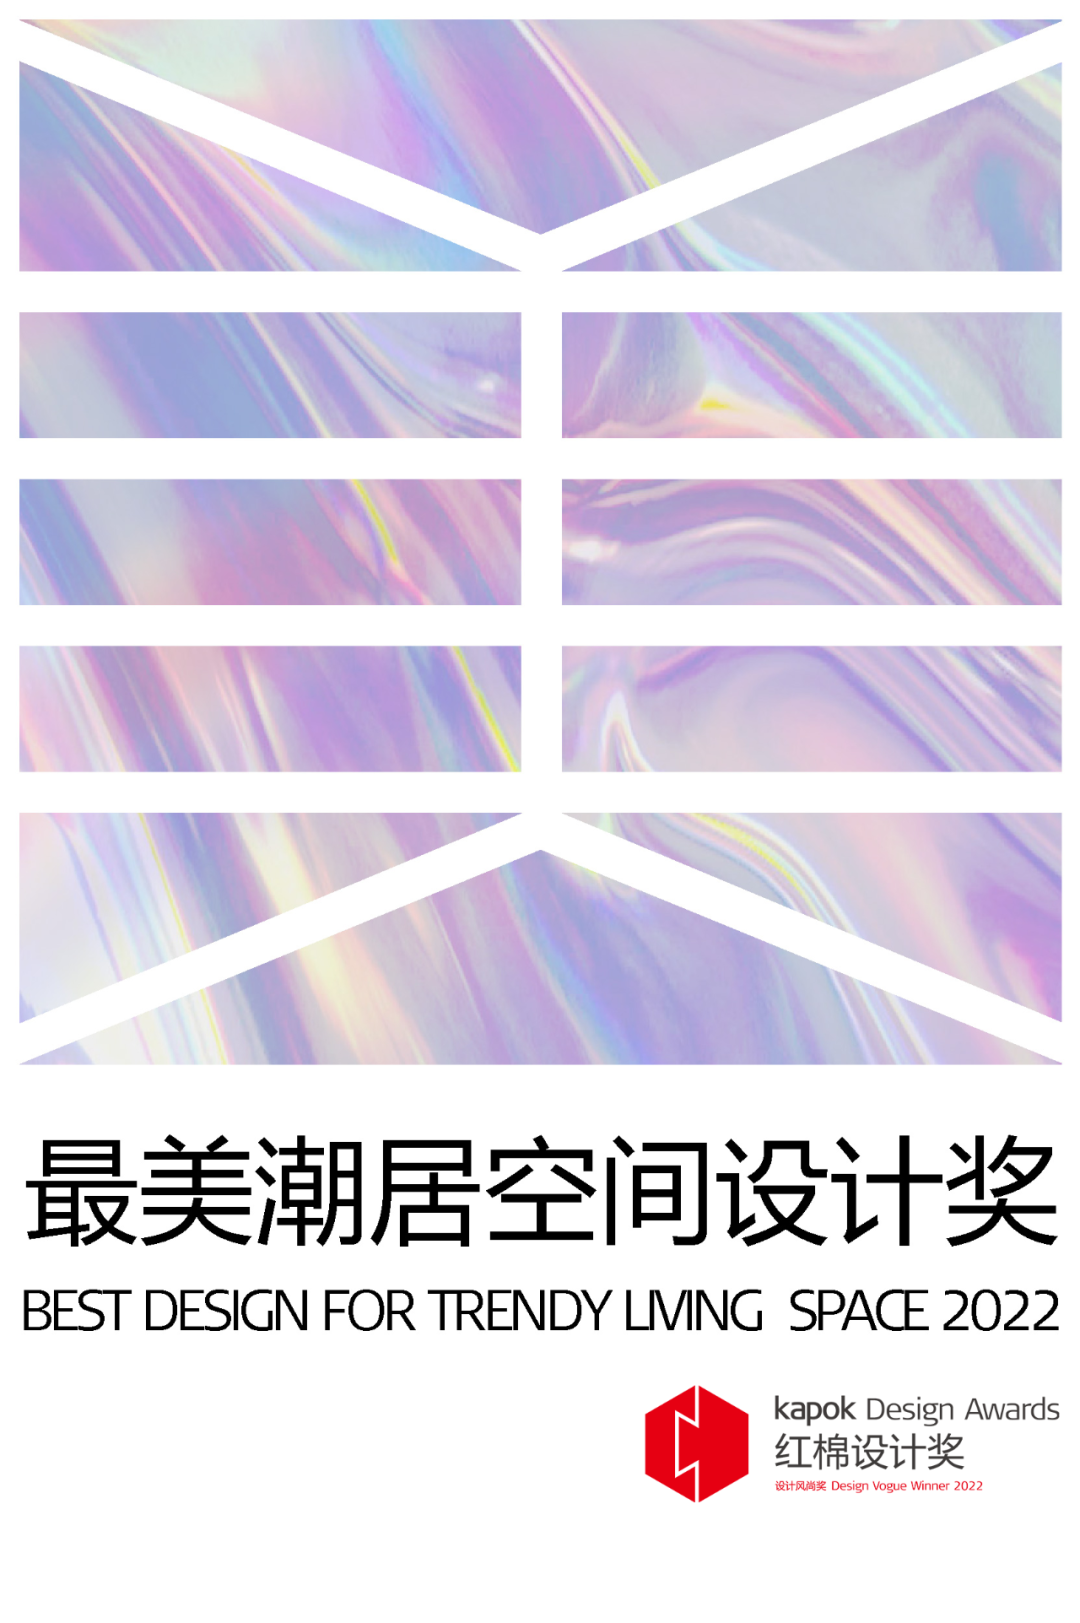 红棉设计奖 | 2022年度最美潮居空间设计奖获奖作品揭晓！